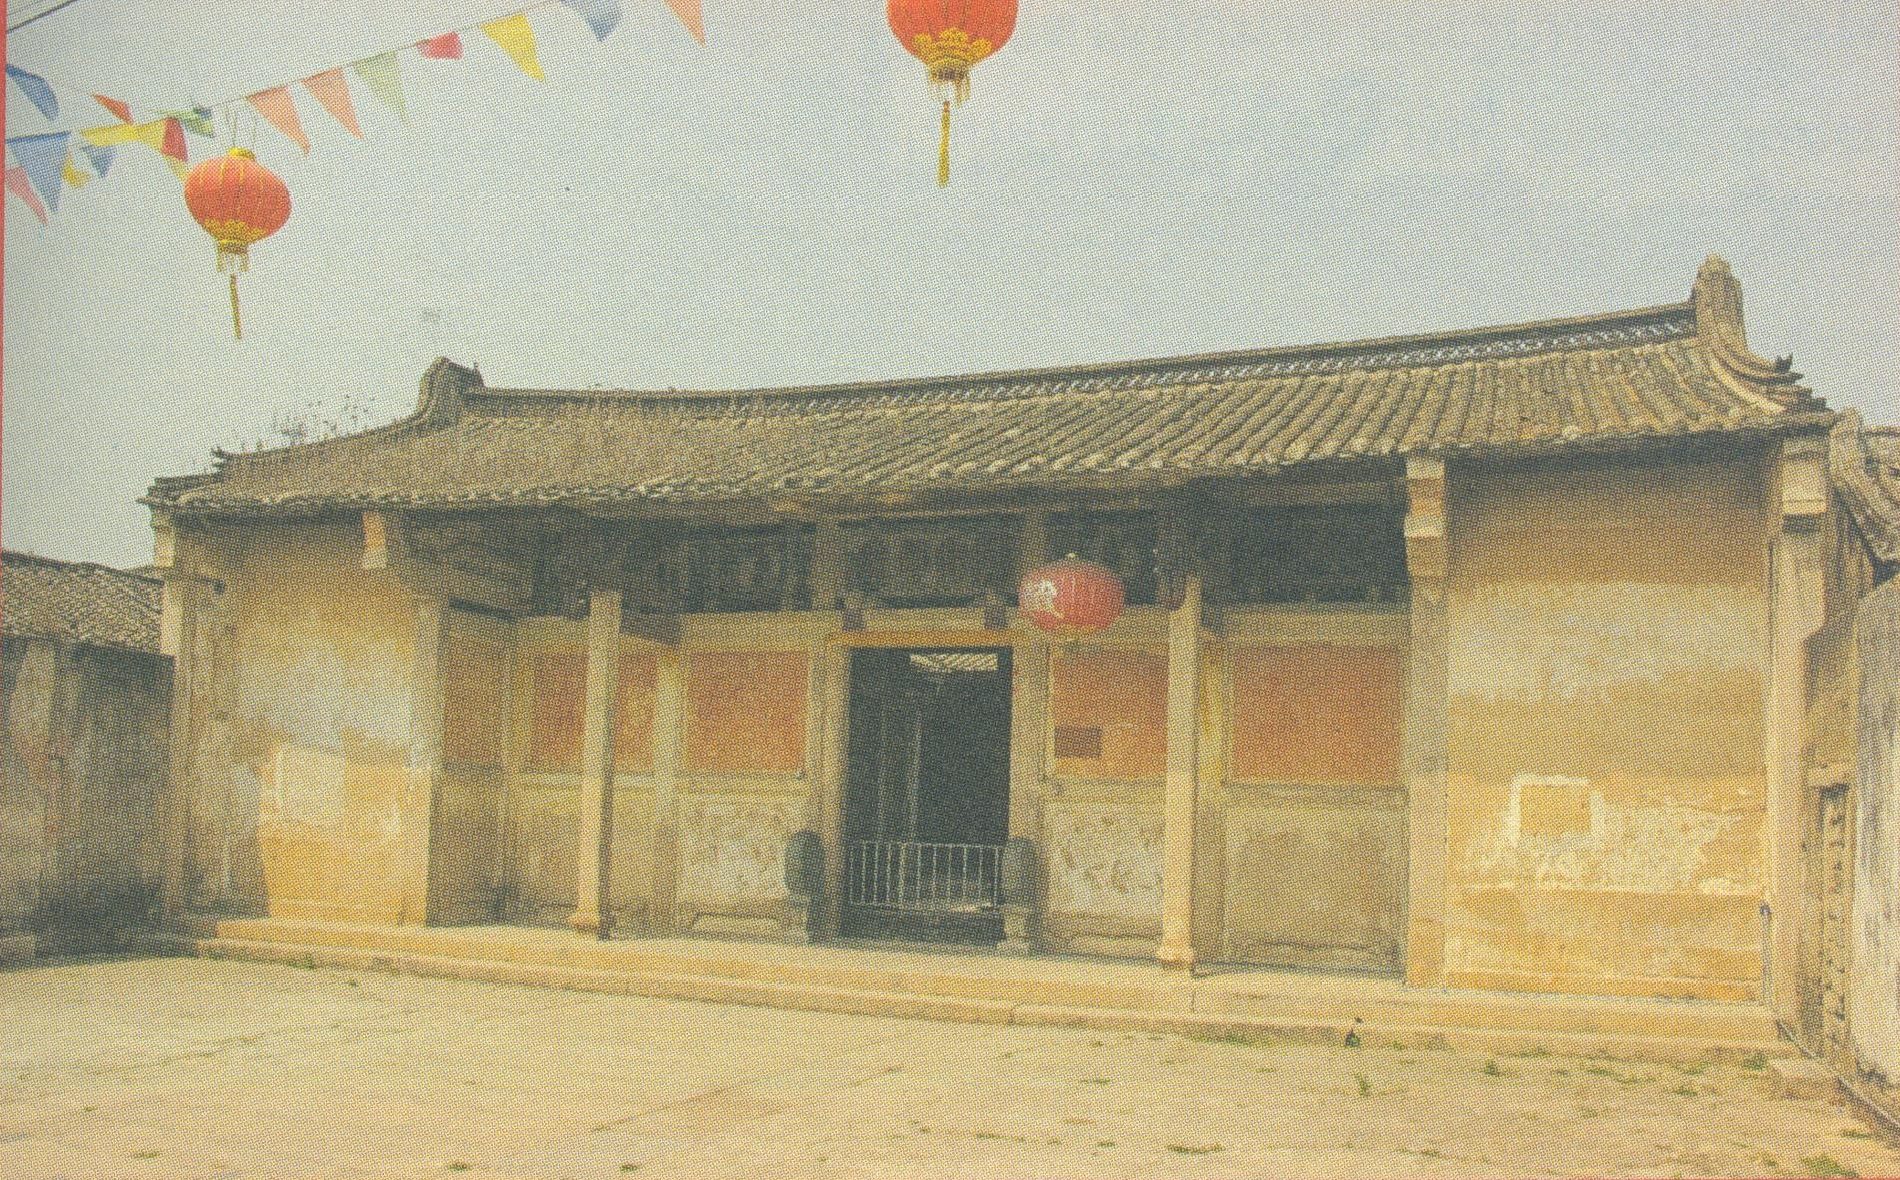 อาคารของศาลบรรพชน หมู่บ้านหลงหู เมืองเฉาโจว